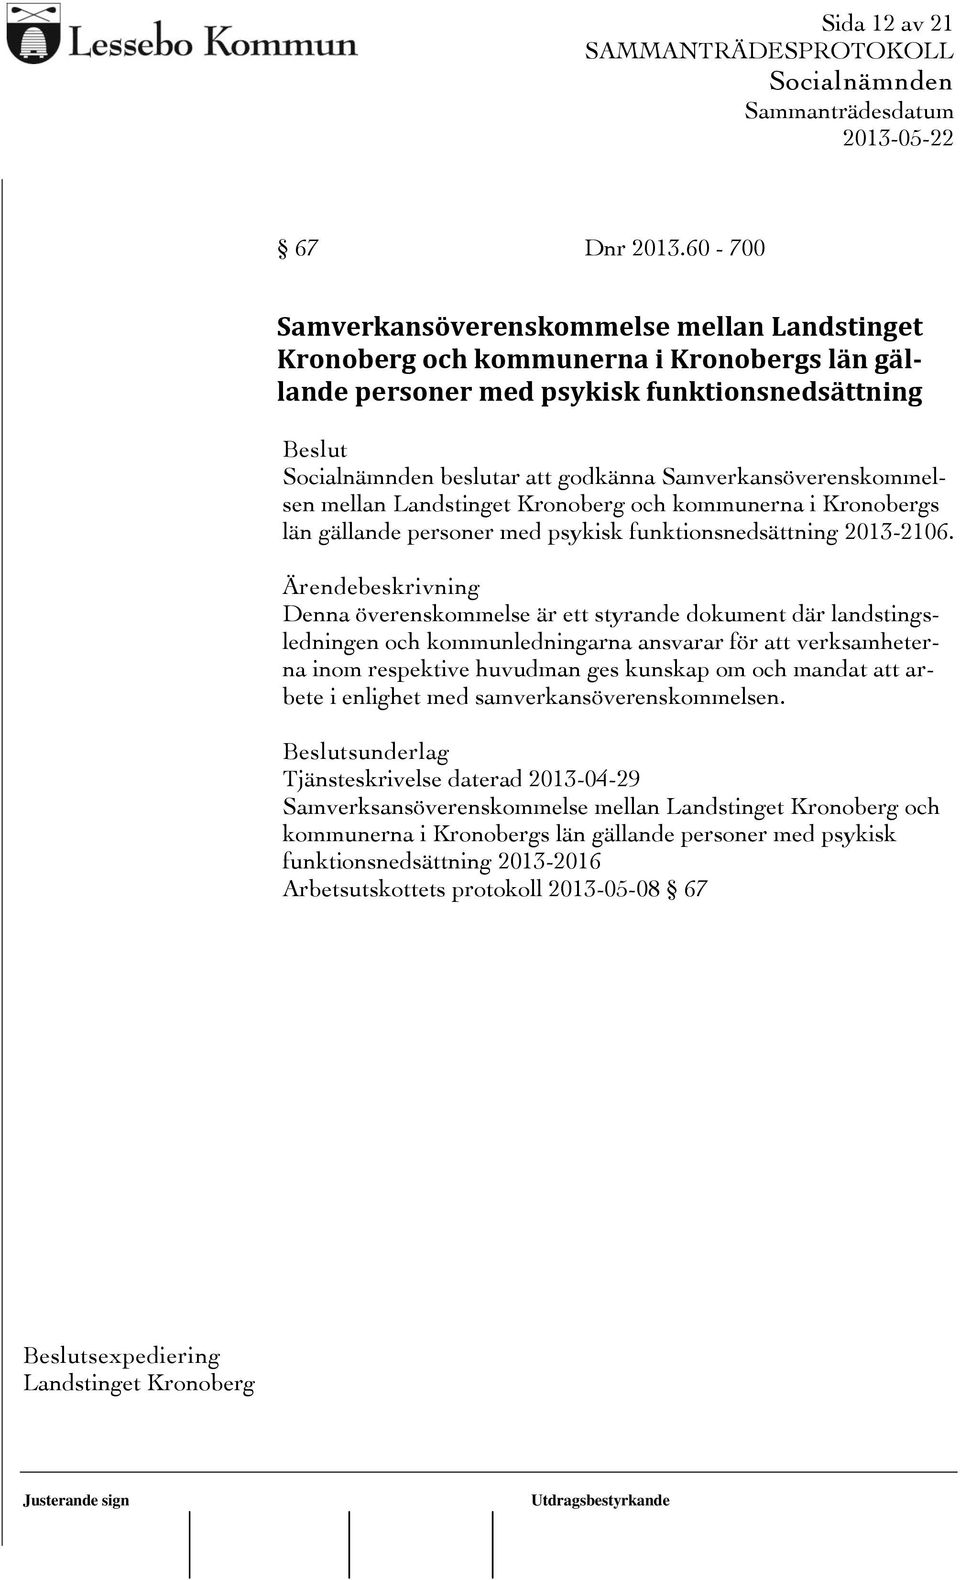 mellan Landstinget Kronoberg och kommunerna i Kronobergs län gällande personer med psykisk funktionsnedsättning 2013-2106.